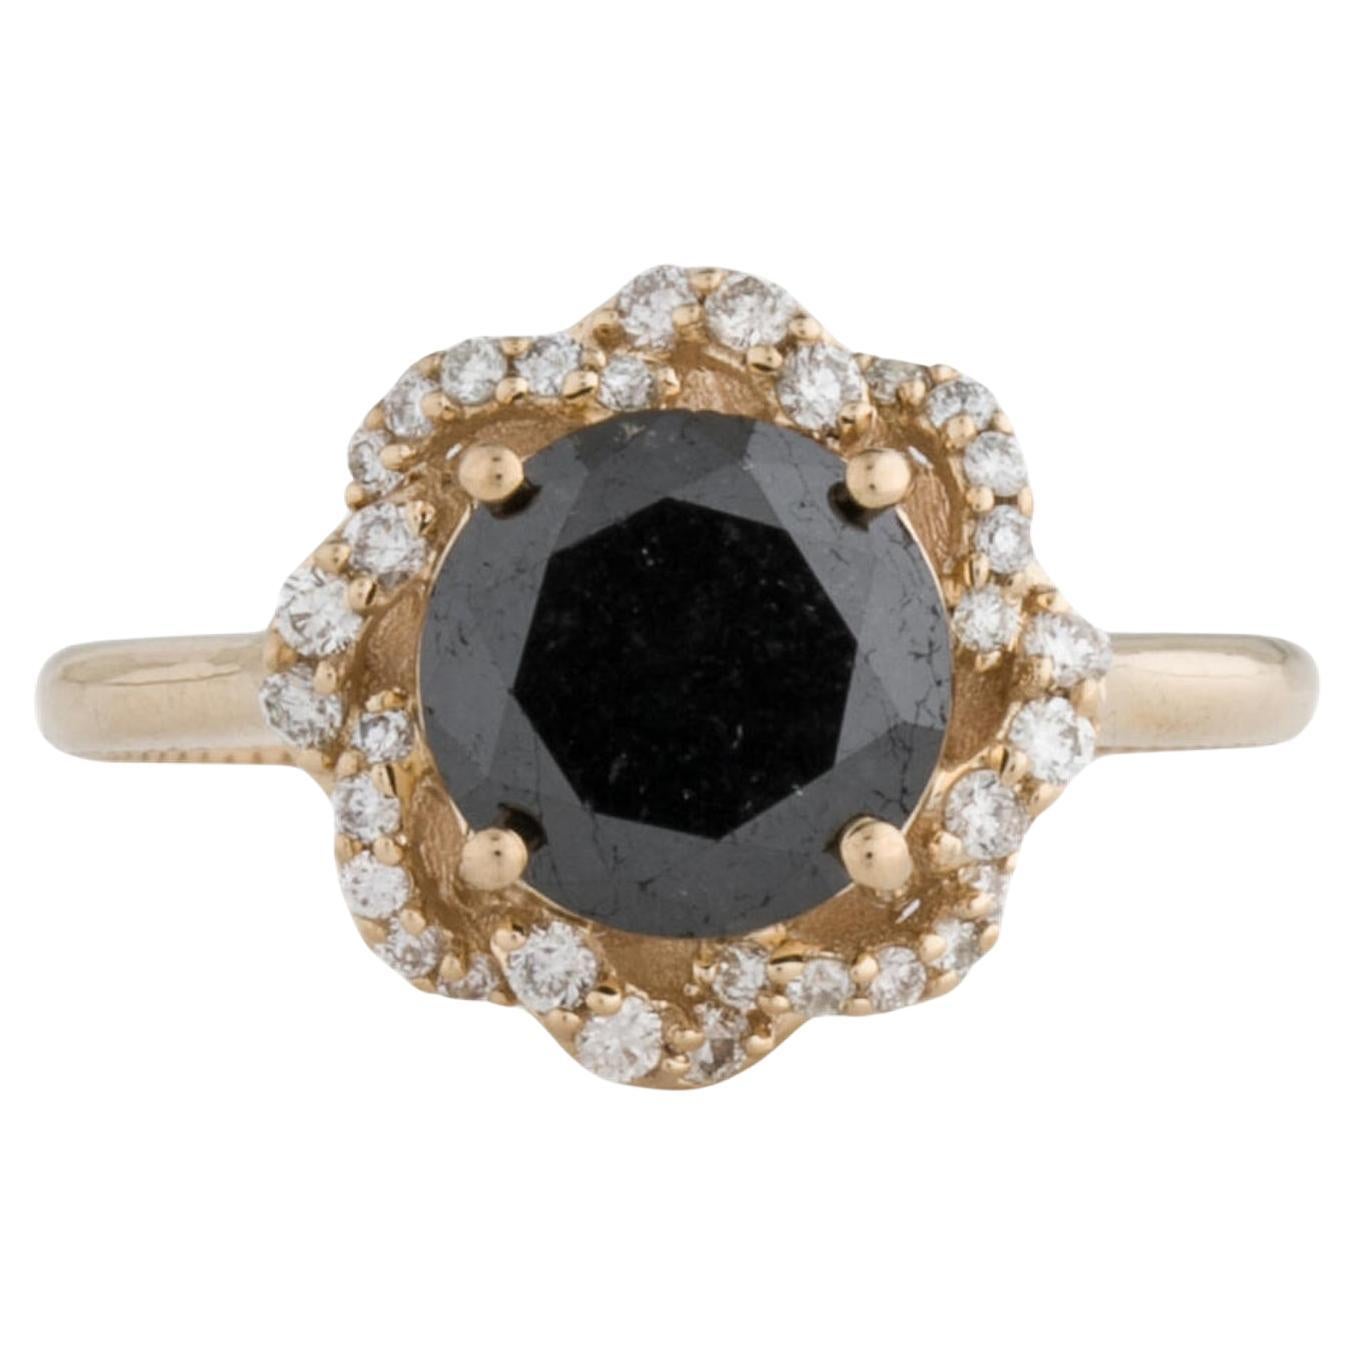 Elegant 14K Diamond Cocktail Ring, 2.09ctw, Size 6.75 - Statement Jewelry Piece